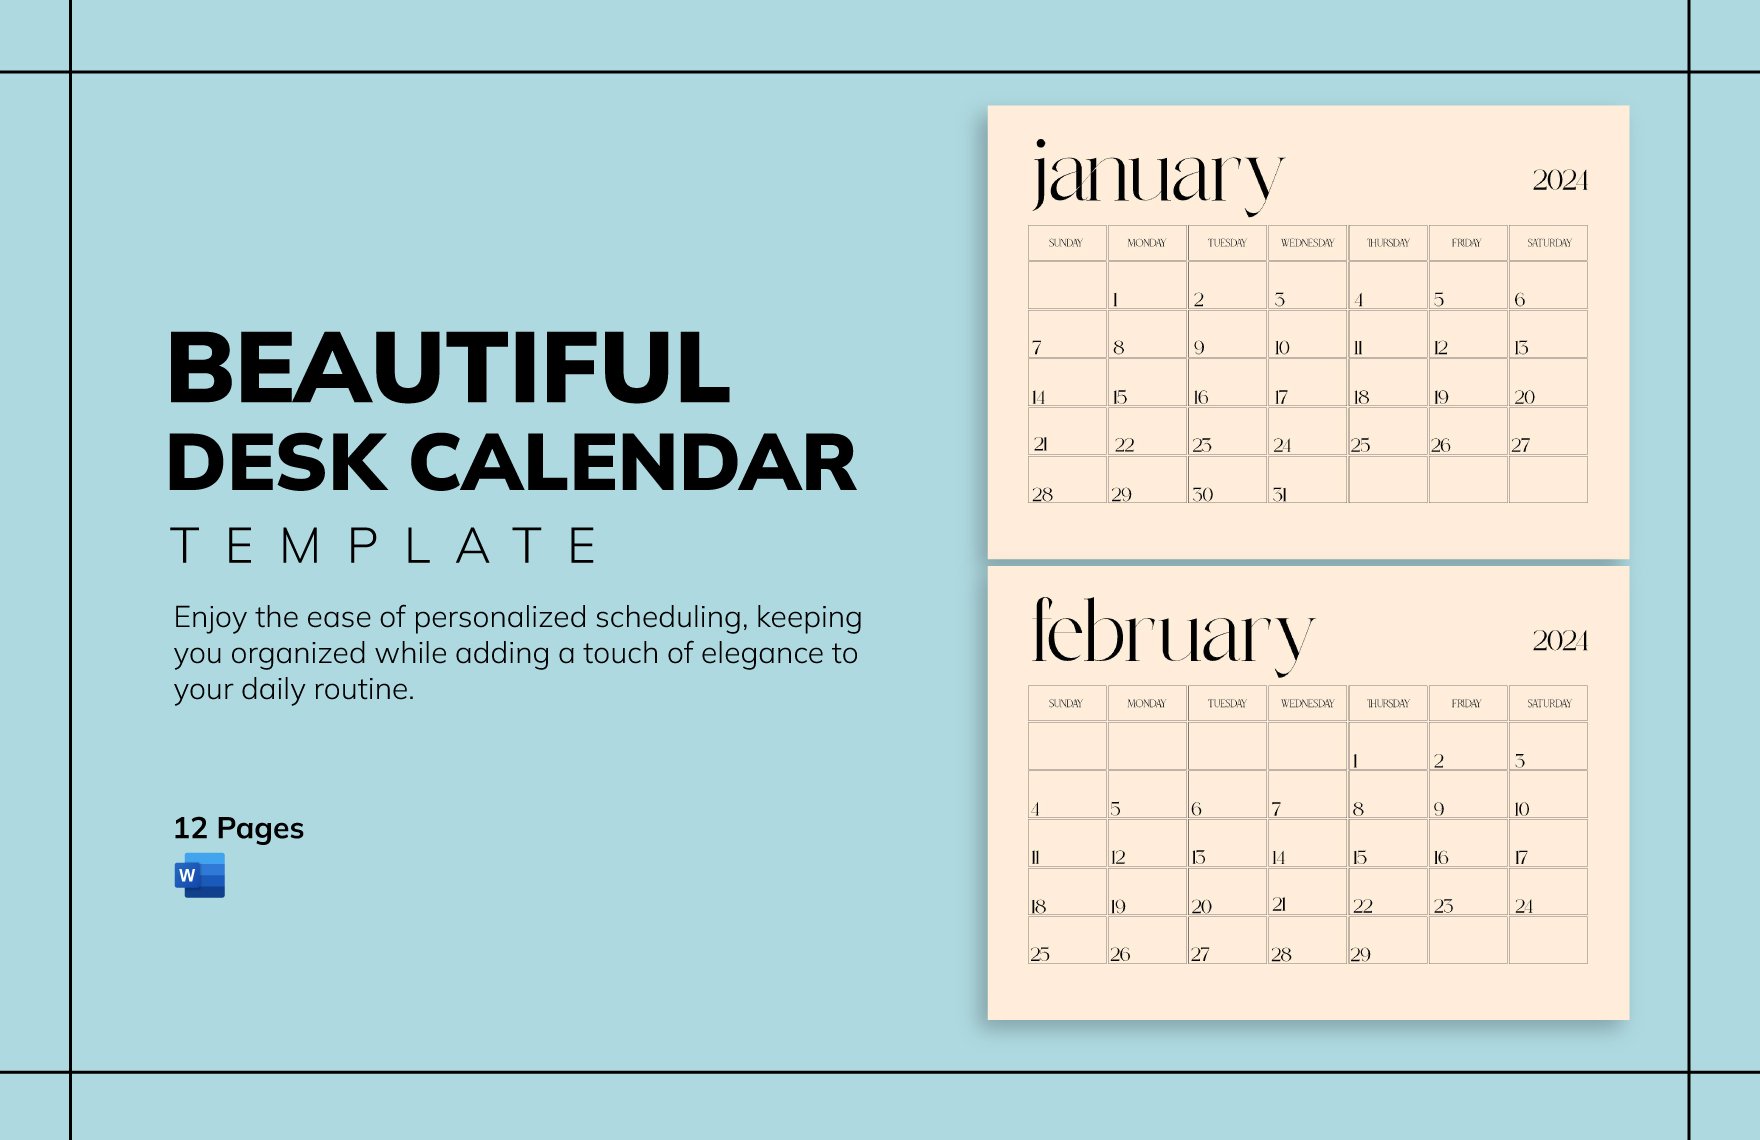 Beautiful Desk Calendar Template